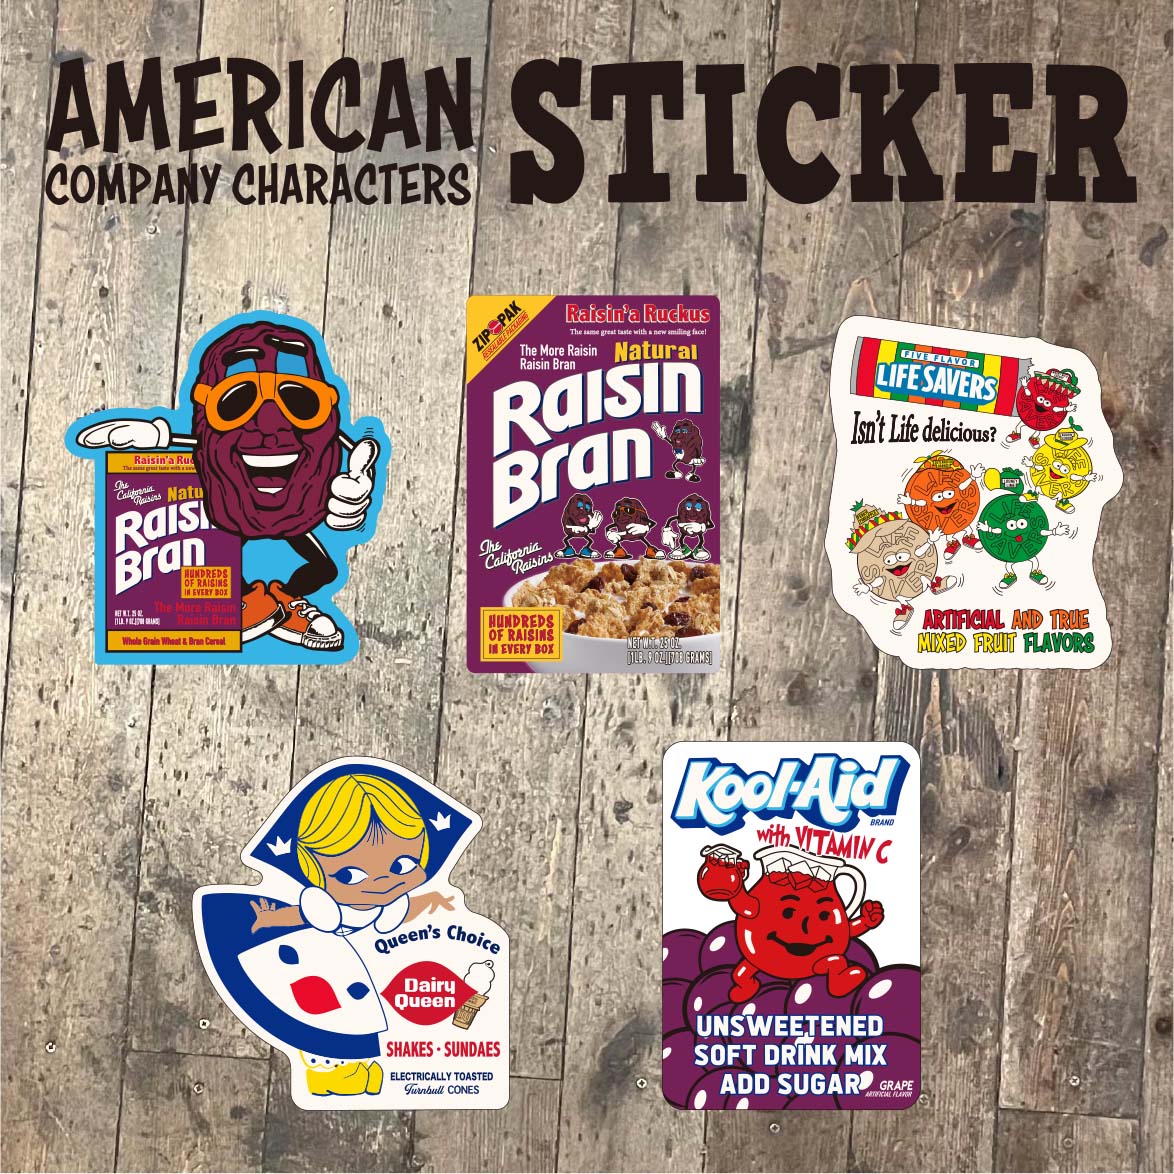 【企業系】 American Sticker アメリカン ステッカー Raisins DAIRY 他